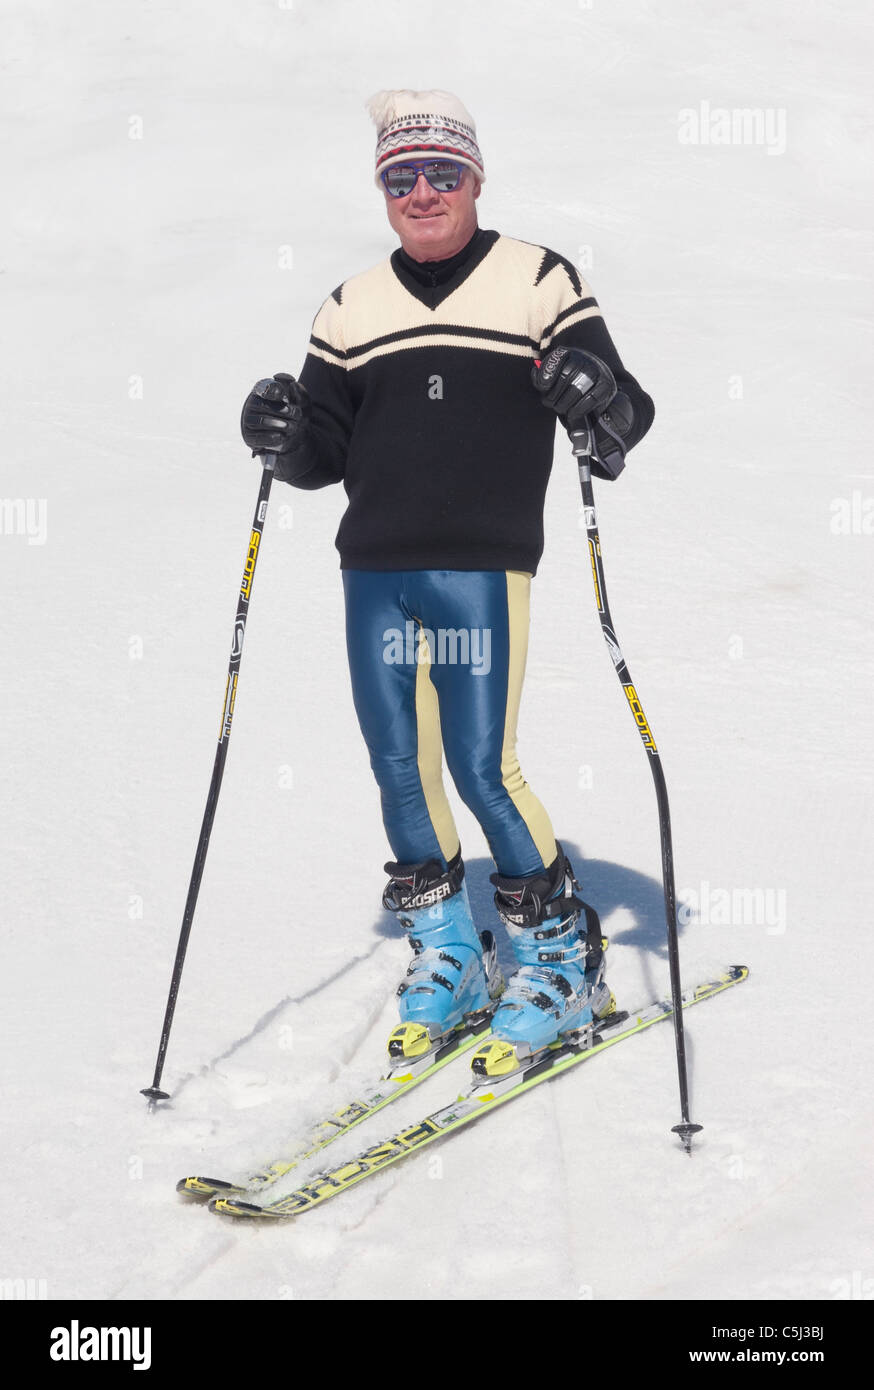 old ski fashion on mountain Stock Photo: 37891830 - Alamy